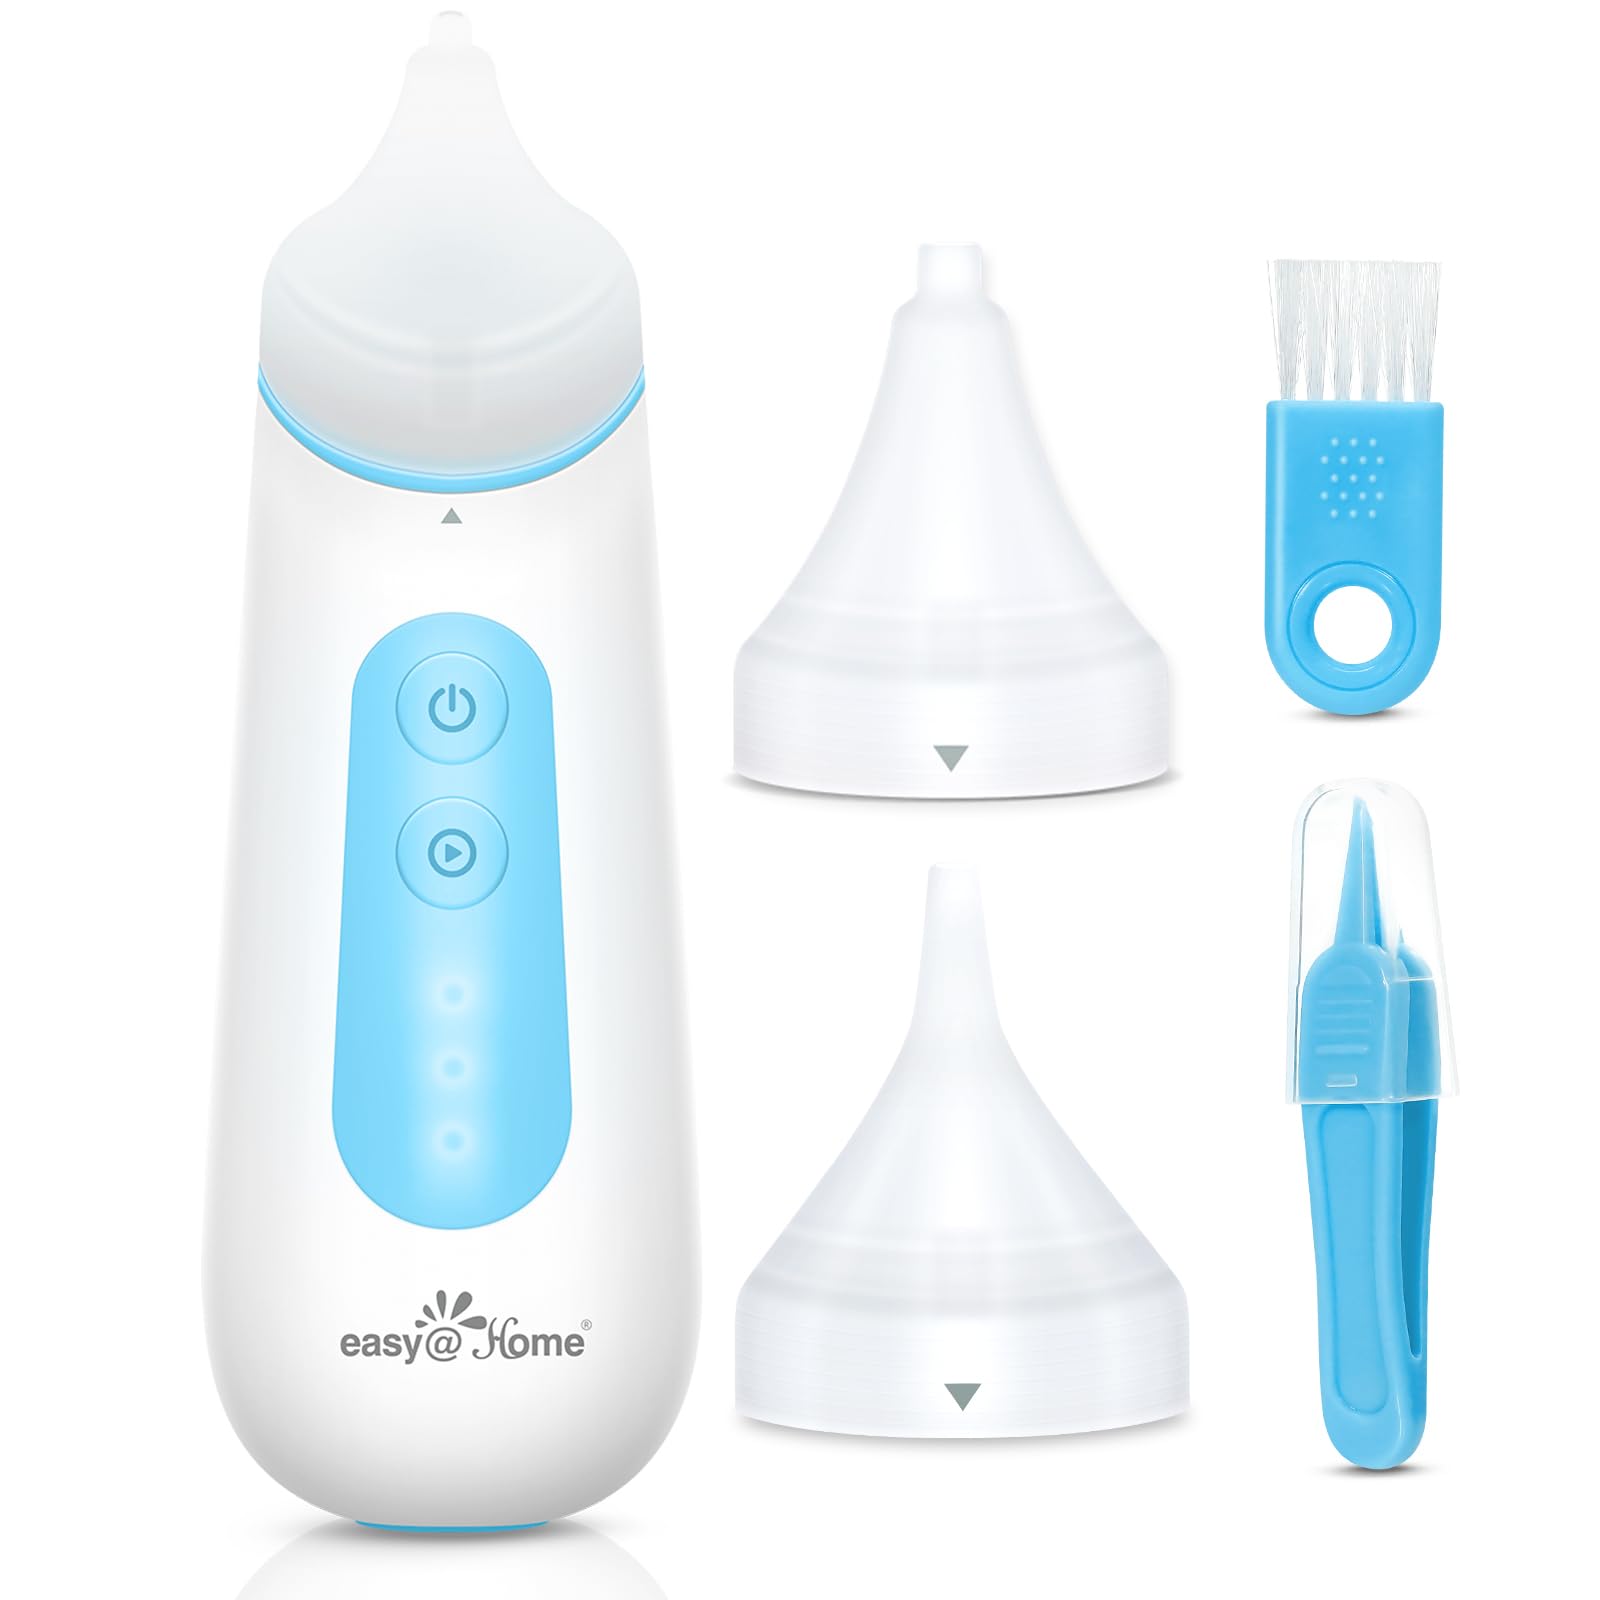 Easy@Home Nasensauger Baby Elektrisch: Nasensauger Staubsauger für baby & kinder Nose Nasal Aspirator Sucker mit 3 Saugstufe & Kieselgel Düse | Automatische Abschaltung | Nachtlicht